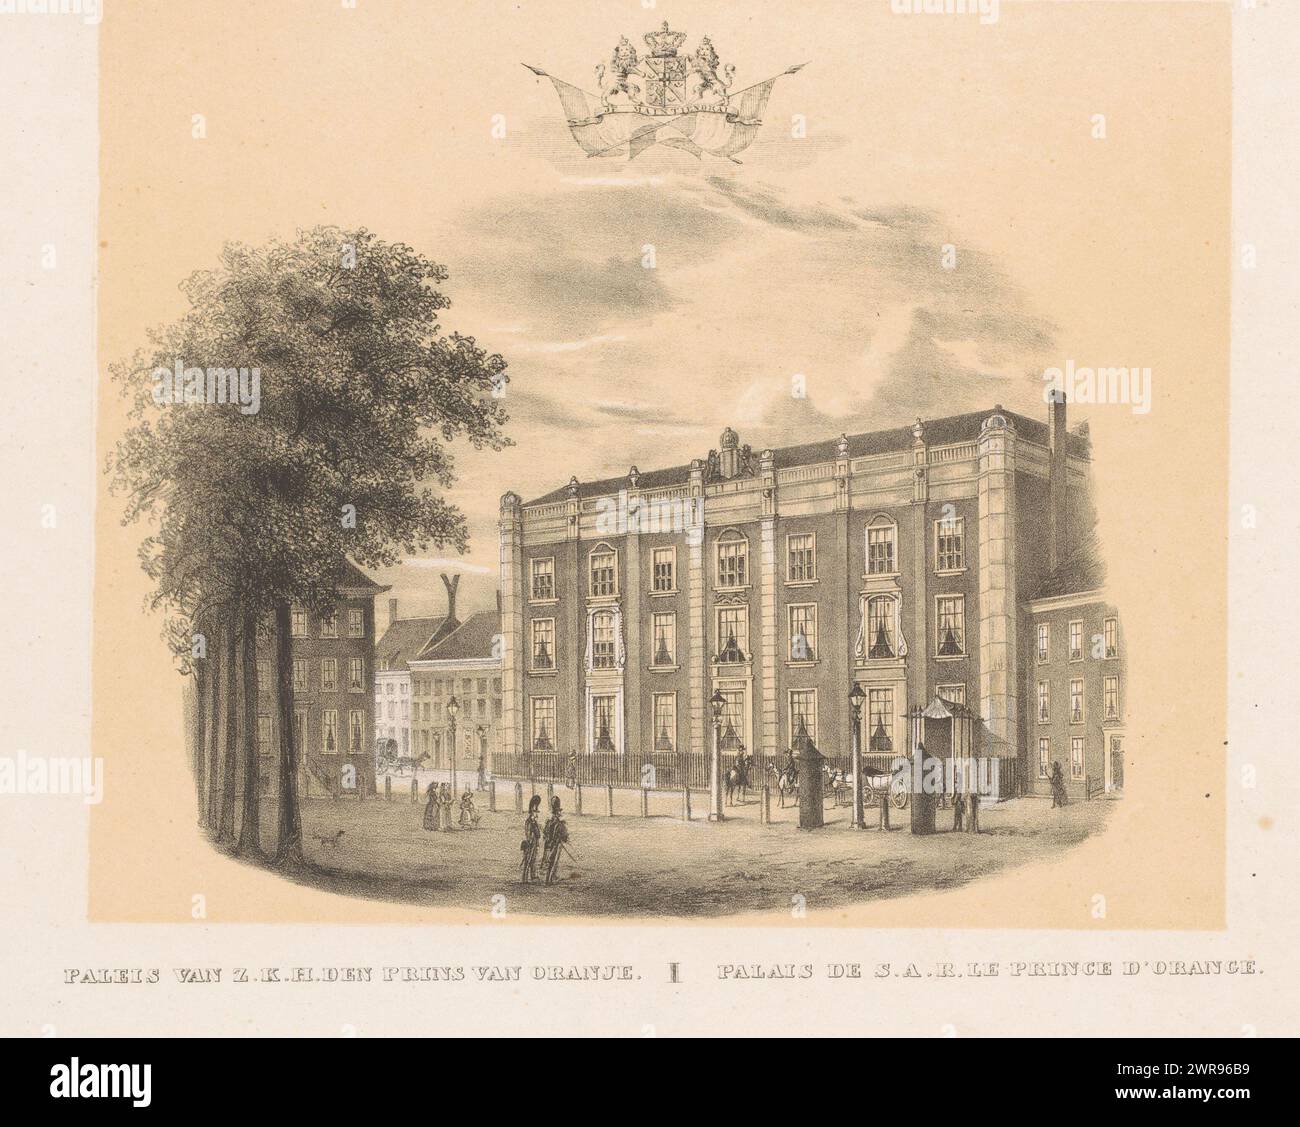 Maison d'hôtes d'Amsterdam à la Haye, Palais de S.A.R. le Prince d'Orange / Palais e S.A.R. le prince d'Orange (titre sur objet), vue de la loge d'Amsterdam avec des personnages marchant dans la rue., imprimeur : inconnu, imprimeur : H.F. Soeterik, (attribution rejetée), imprimeur: A.P. van Langenhuijsen, la Haye, 1830 - 1846, papier, hauteur 229 mm × largeur 296 mm, impression Banque D'Images